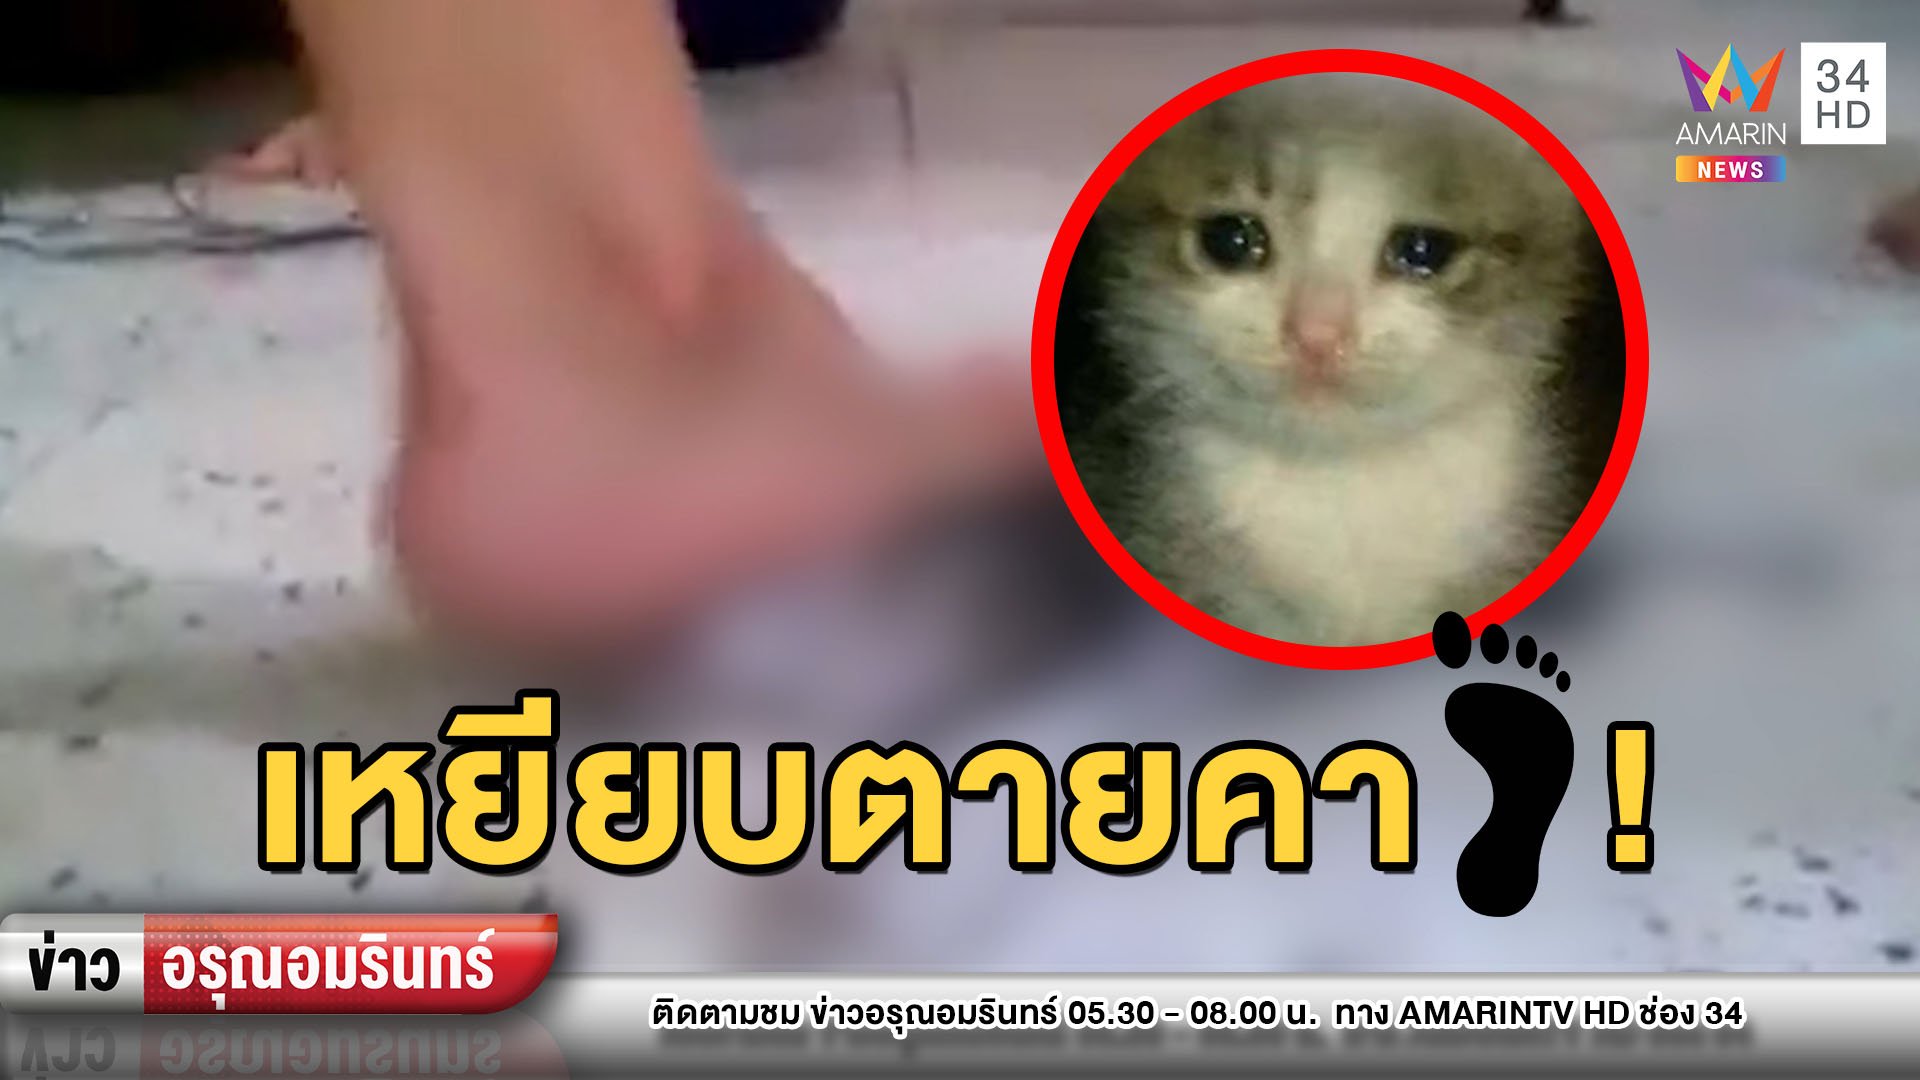 เดือด! โจ๋รุมเหยียบแมวน้อยทรมานสิ้นใจคาเท้า พบต้นคลิปจากมาเลเซีย | ข่าวอรุณอมรินทร์ | 8 พ.ค. 63 | AMARIN TVHD34